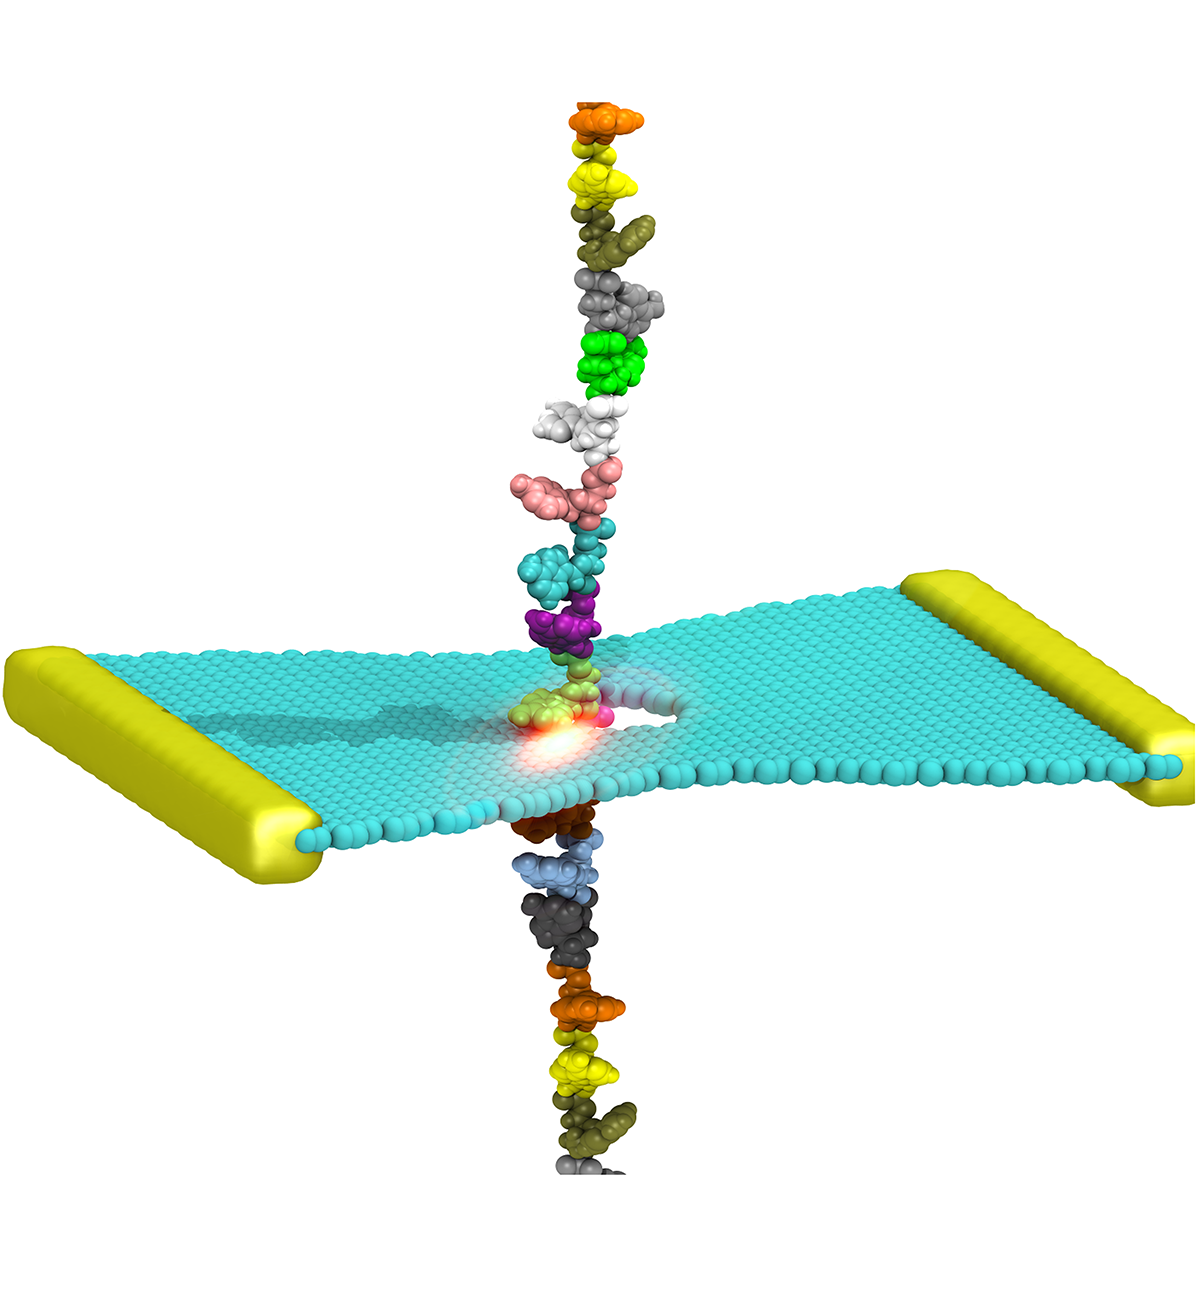 DNA graphene